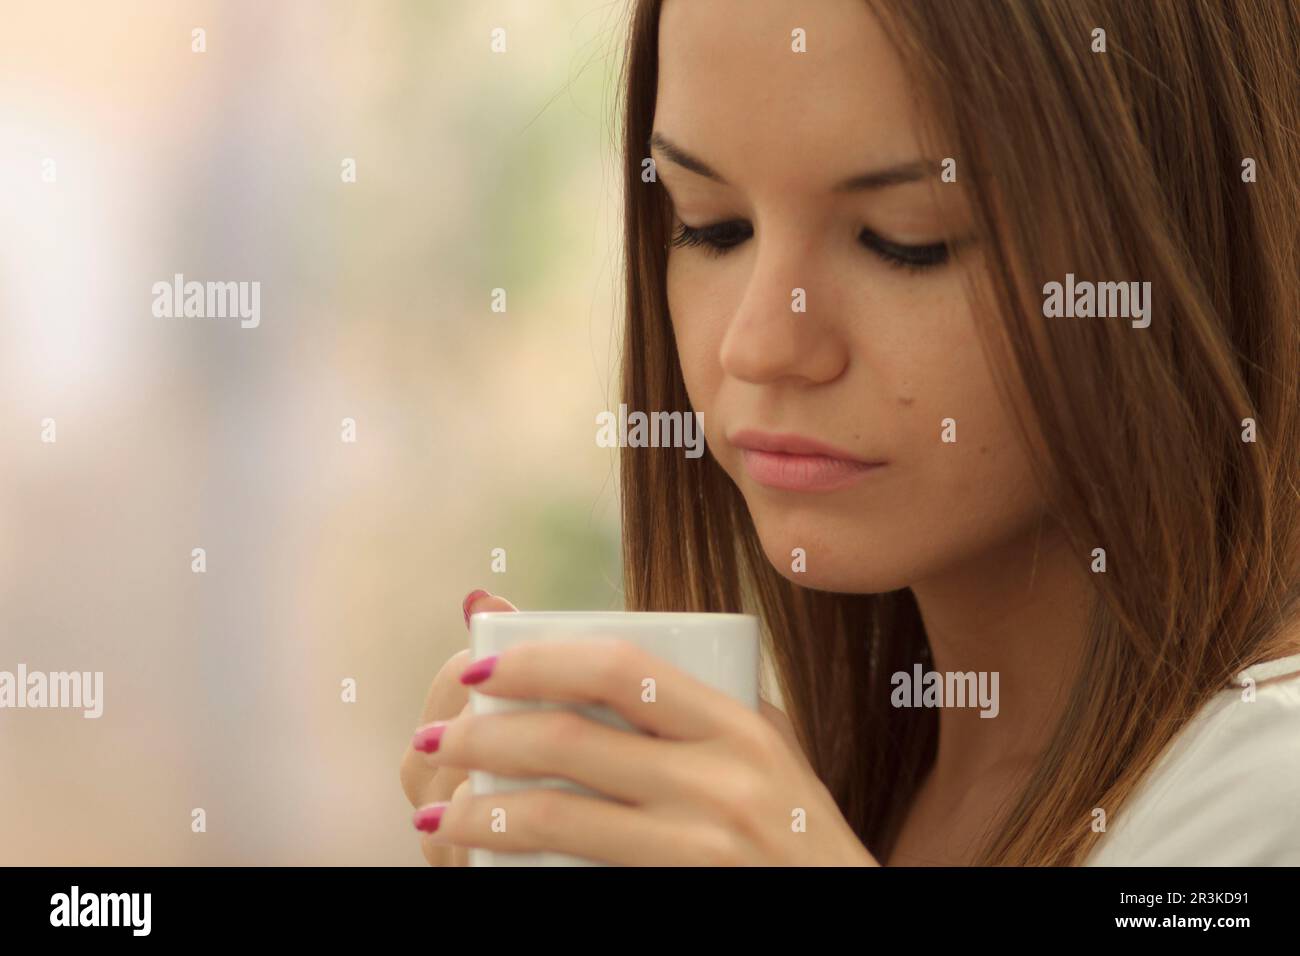 mujer joven bebiendo de una taza,islas baleares, Spain. Stock Photo